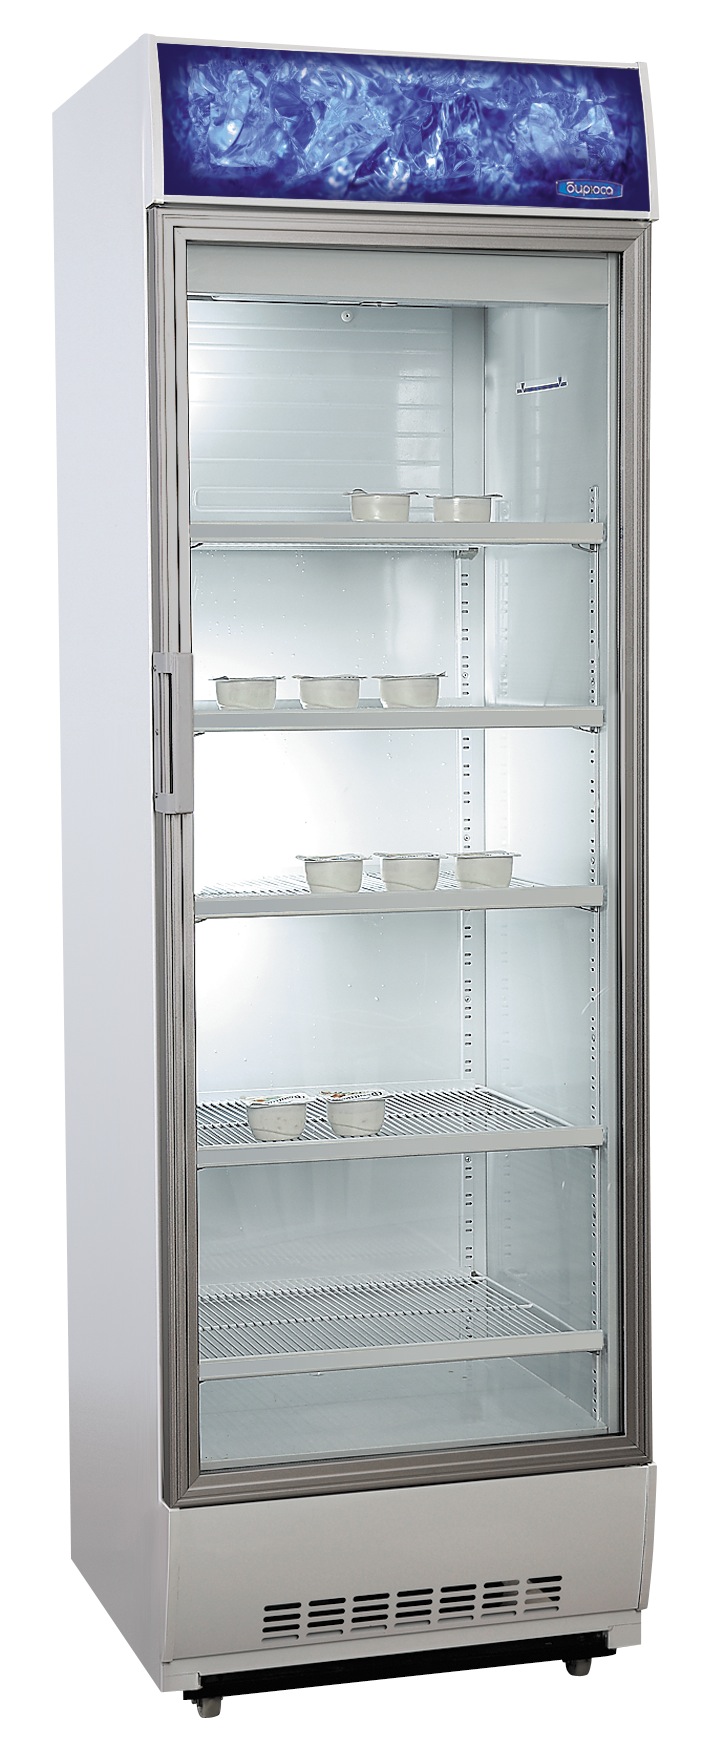 Холодильник витрина бирюса. Шкаф-витрина Бирюса 520pn. Холодильник витрина Бирюса 460. Холодильник Бирюса витринный со стеклянной дверью 460n. Холодильная витрина Бирюса 460 НВЭ-1.